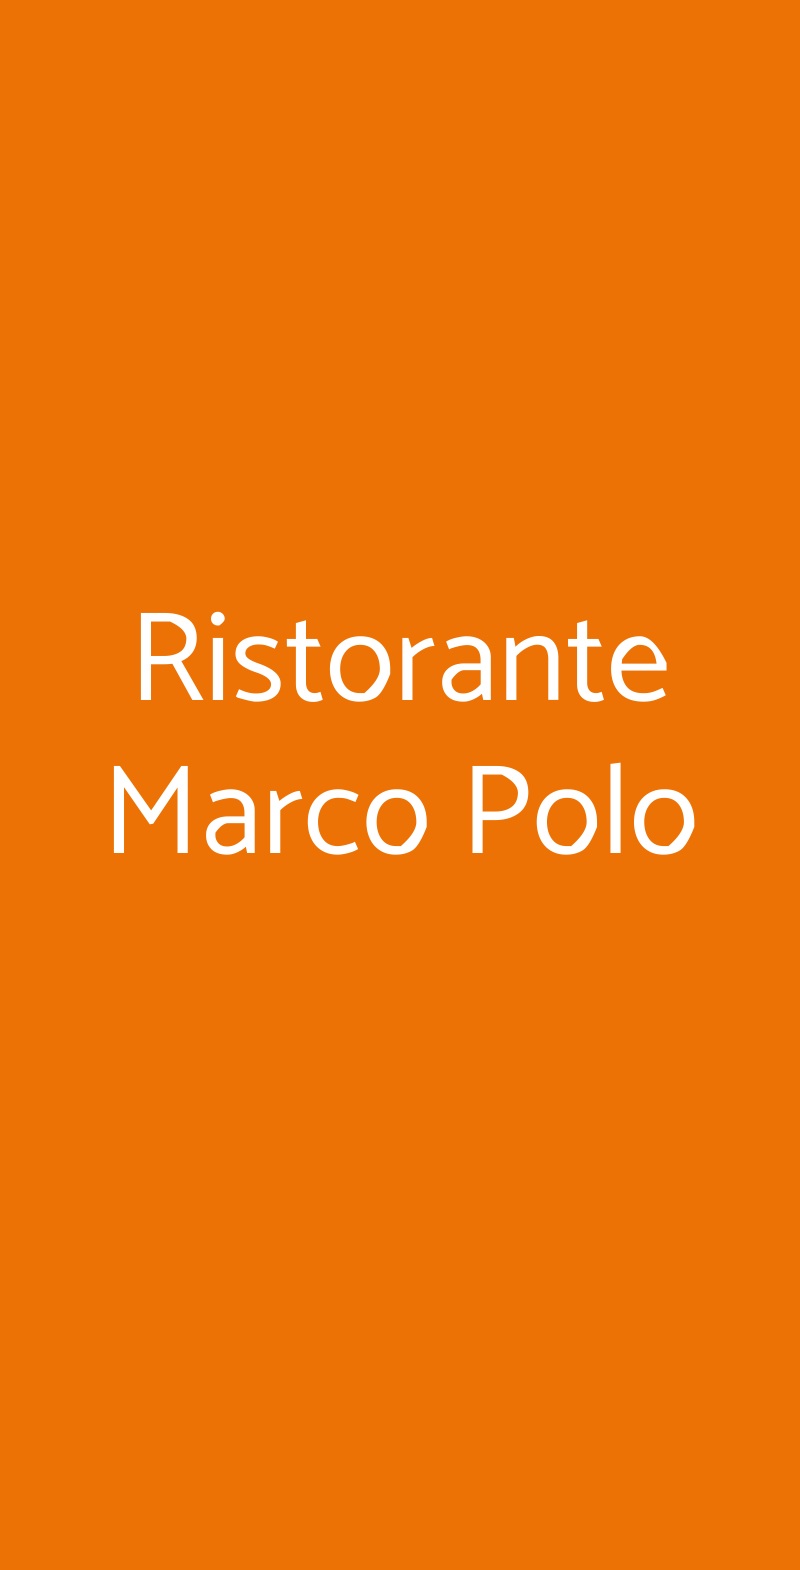 Ristorante Marco Polo Ventimiglia menù 1 pagina